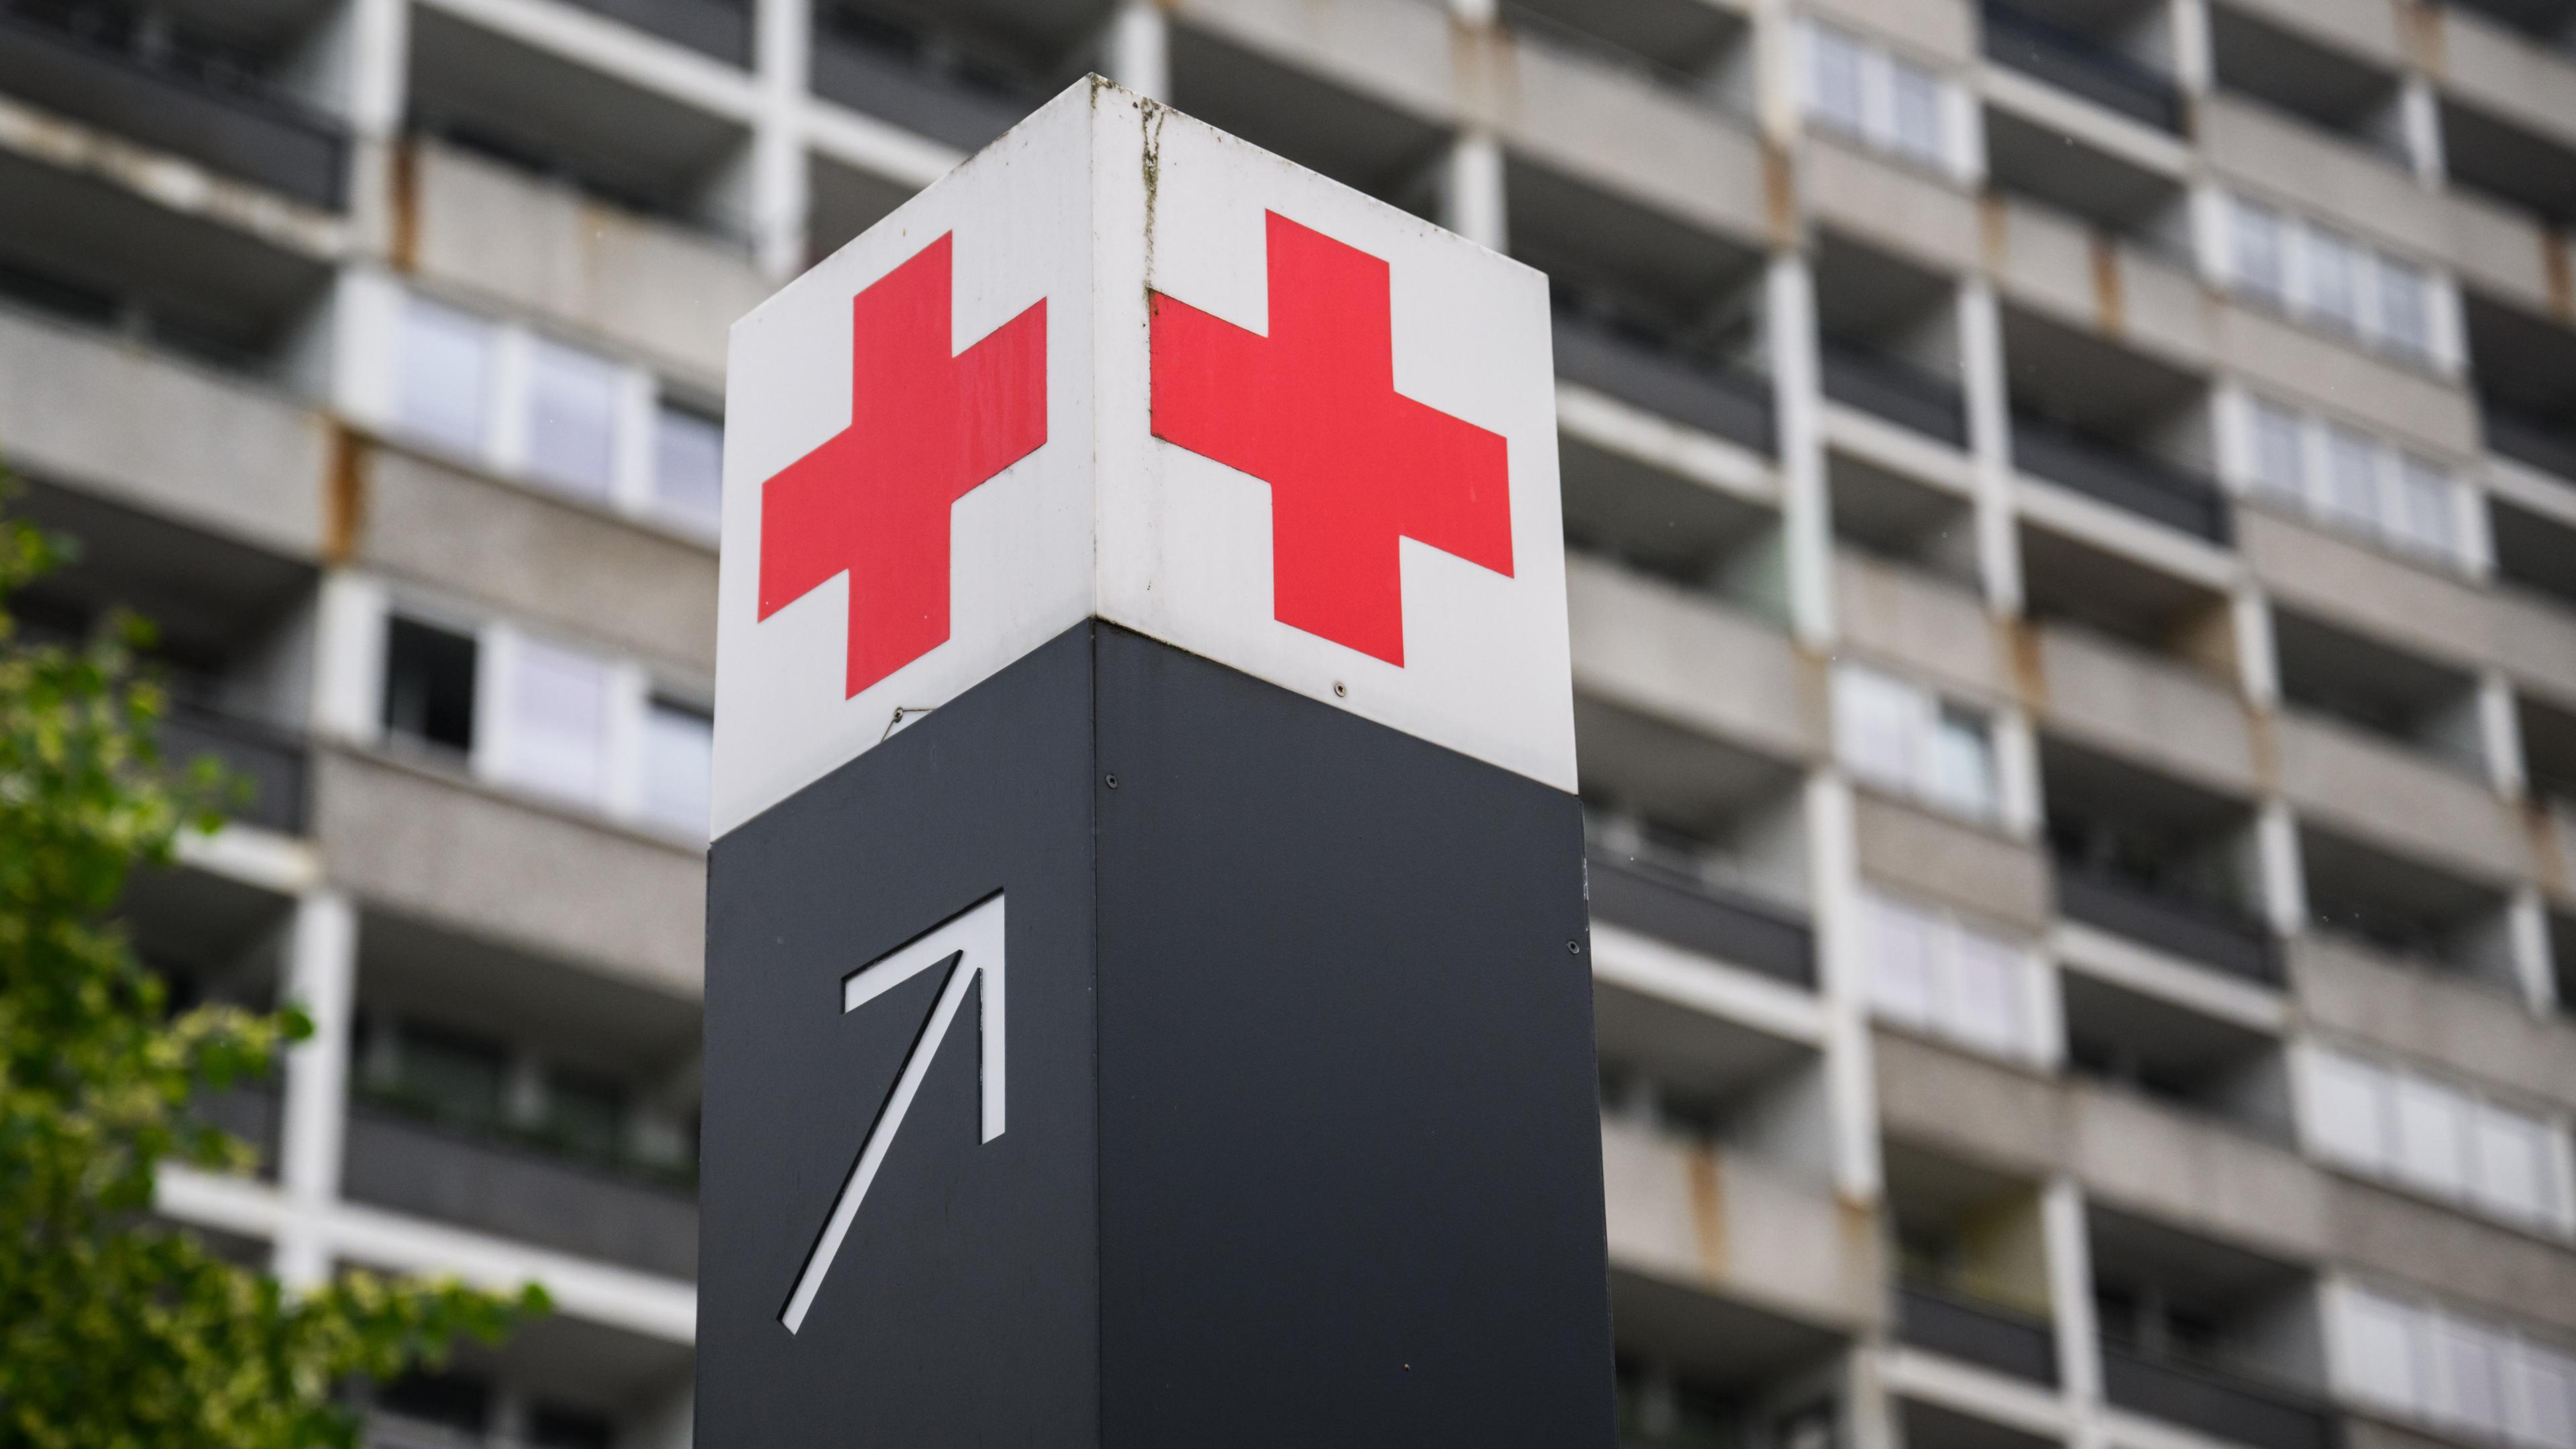 Ein Schild mit einem roten Kreuz weist den Weg zur Notaufnahme in einem Krankenhaus hin.